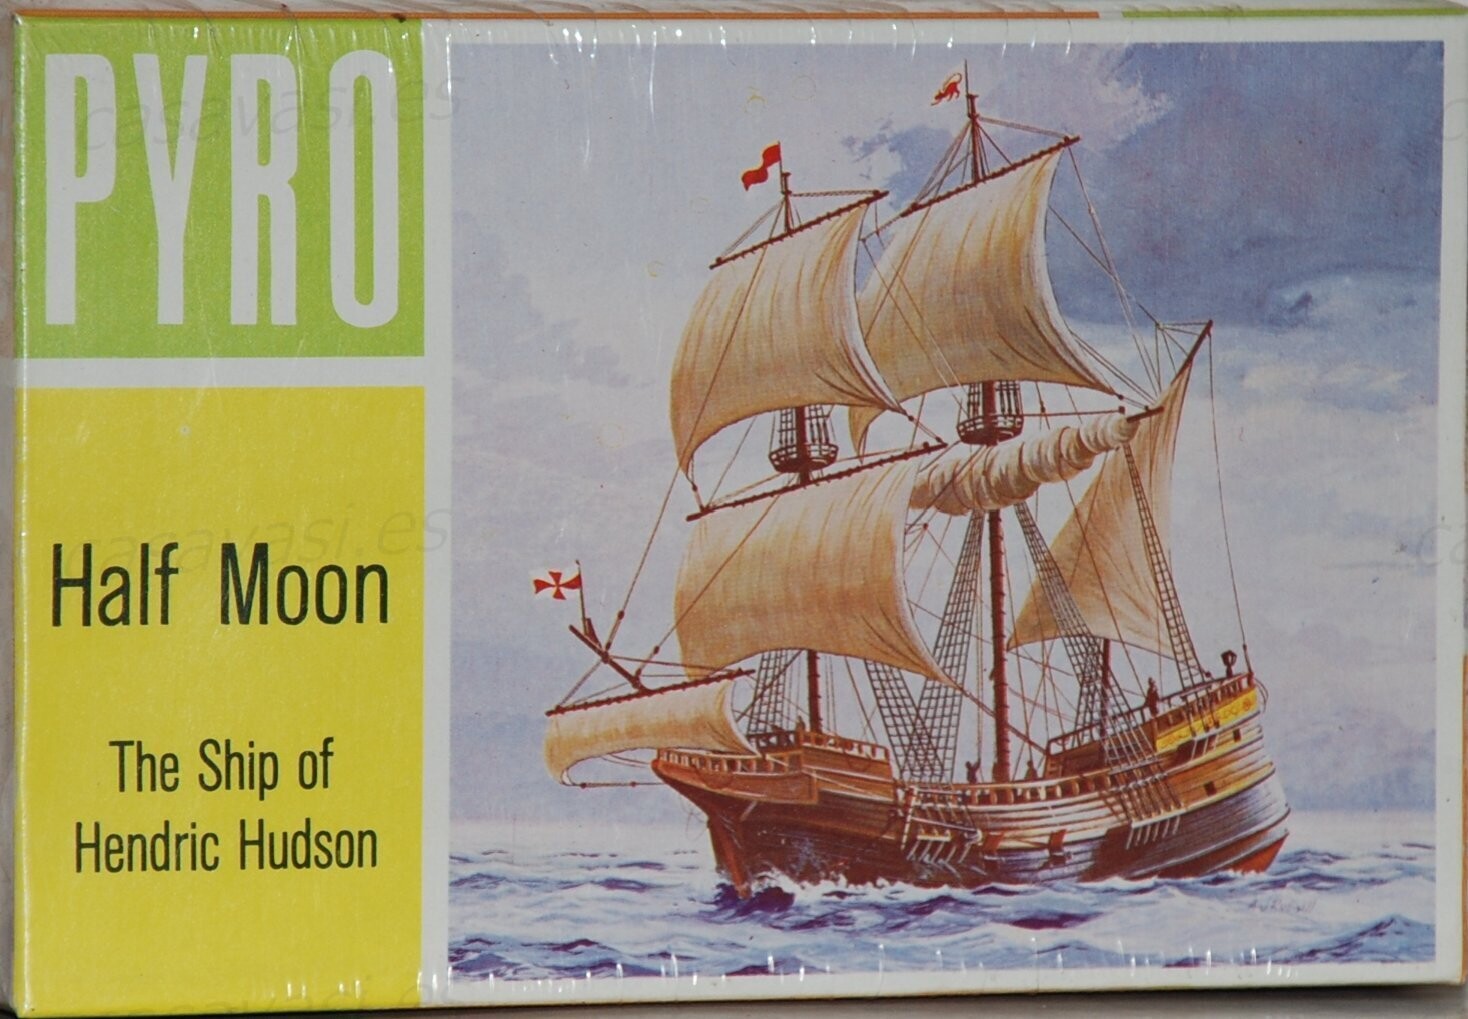 Pyro - b366-75 - Nº6 - 1967 -Half Moon - The Ship of Hendric Hudson
Box Size 18.5 x 12 cm.